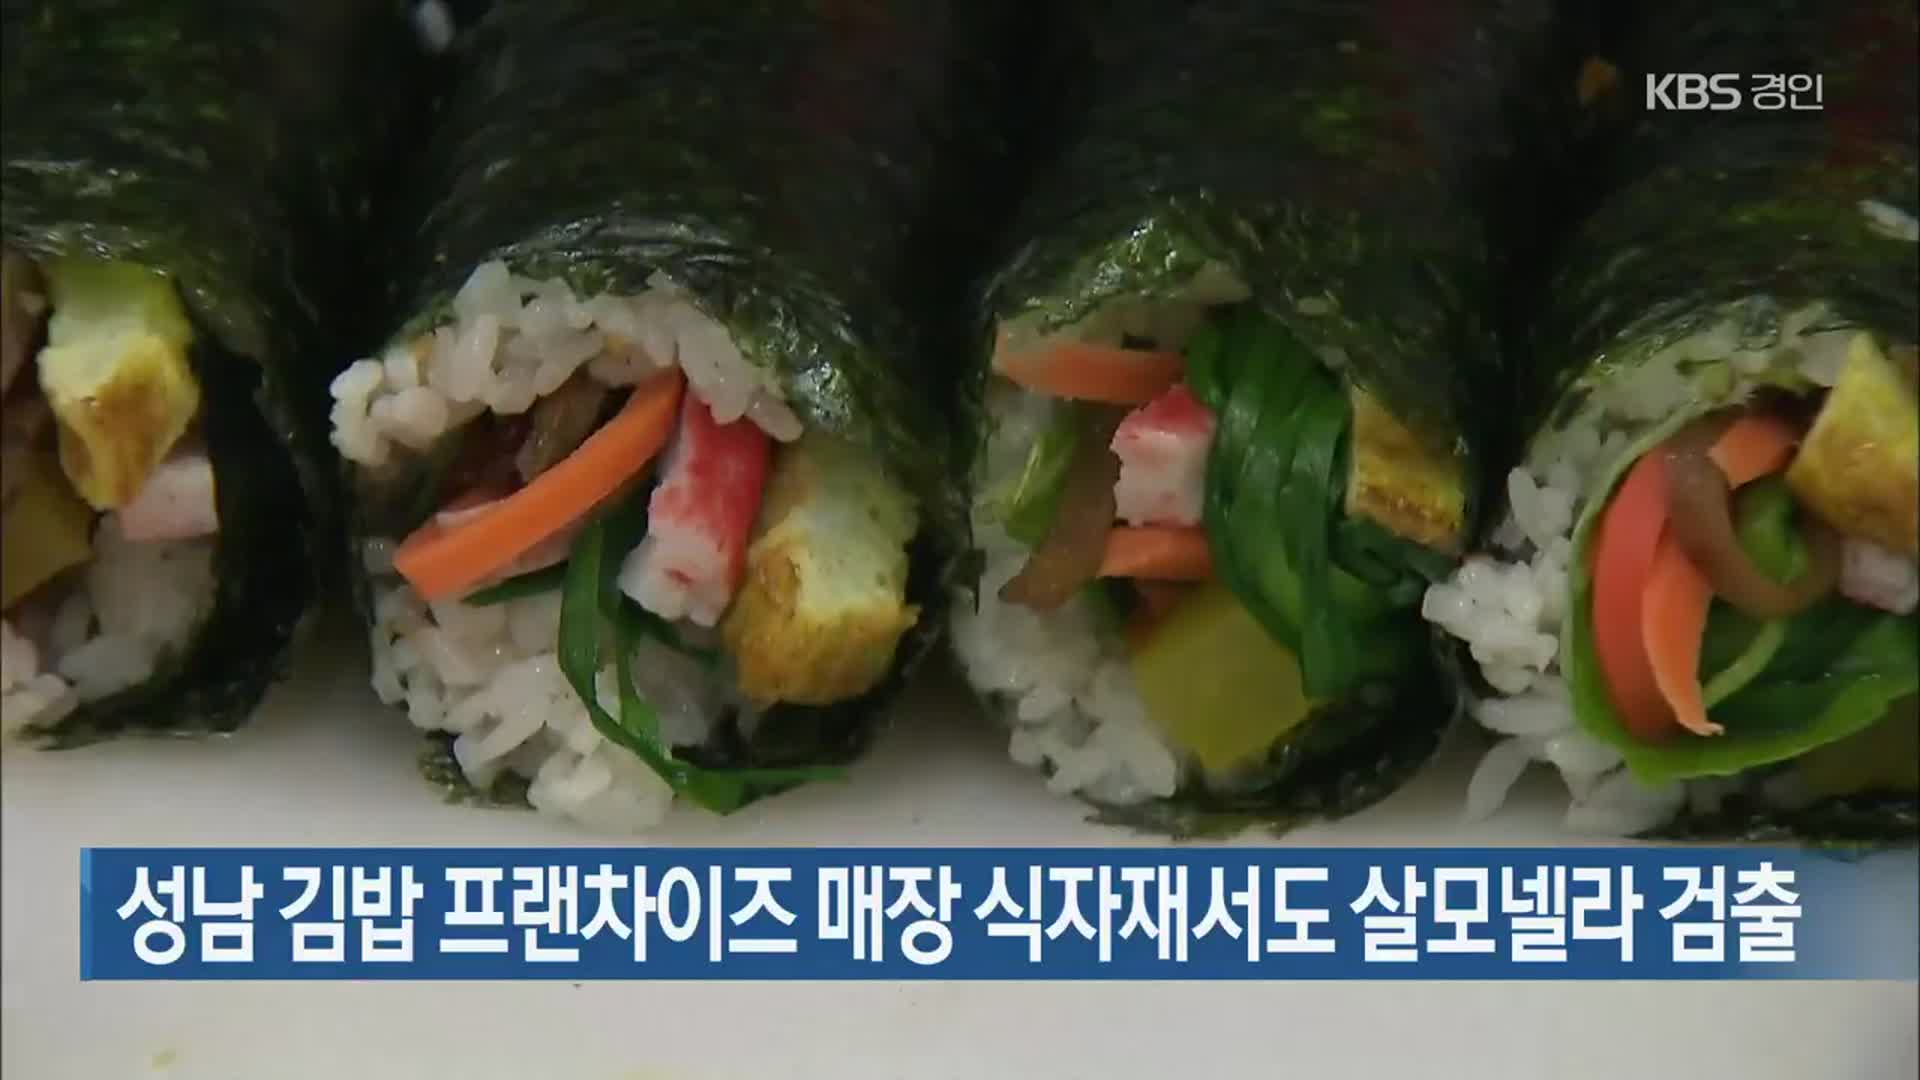 성남 김밥 프랜차이즈 매장 식자재서도 살모넬라 검출